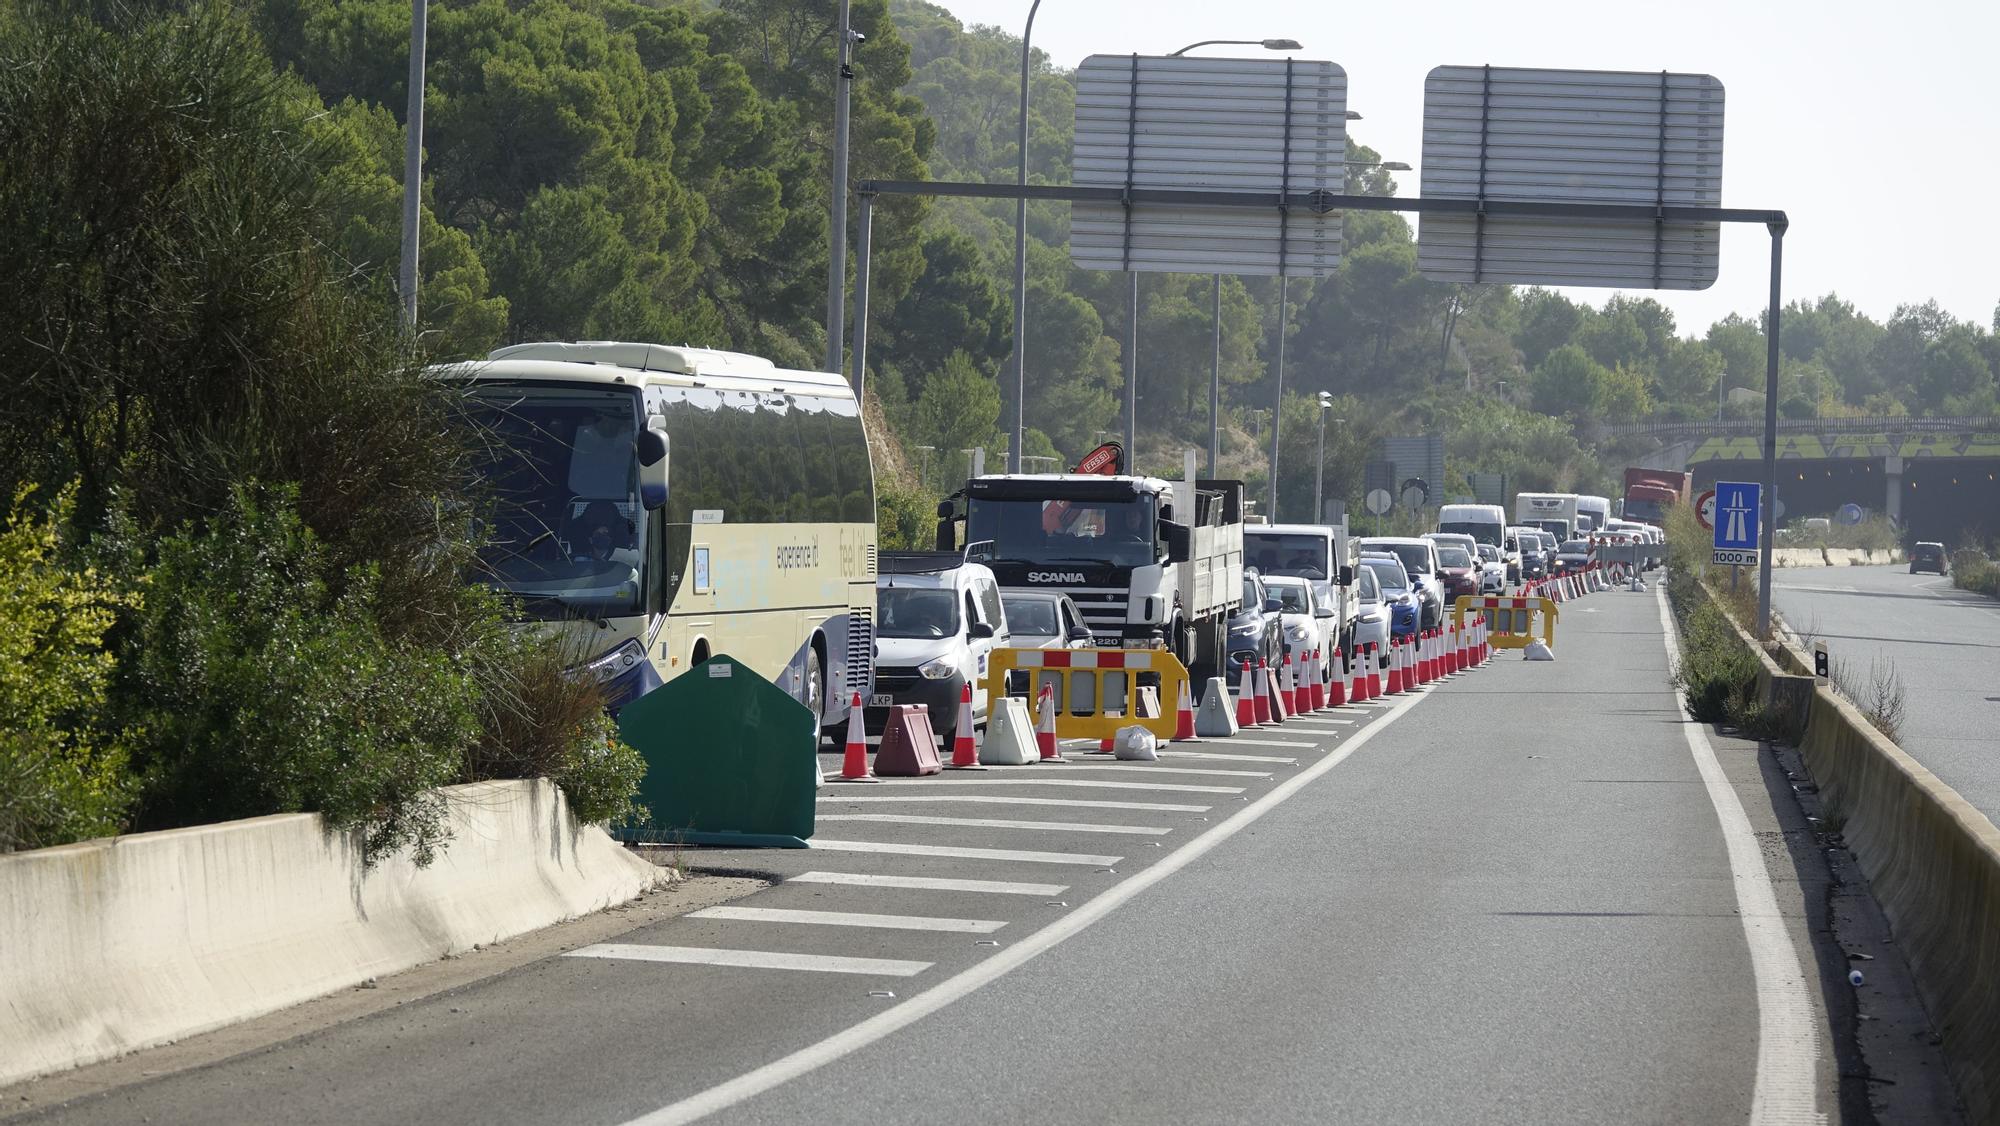 Vuelven los grandes atascos en la autopista de Andratx por las obras del túnel de Son Vic